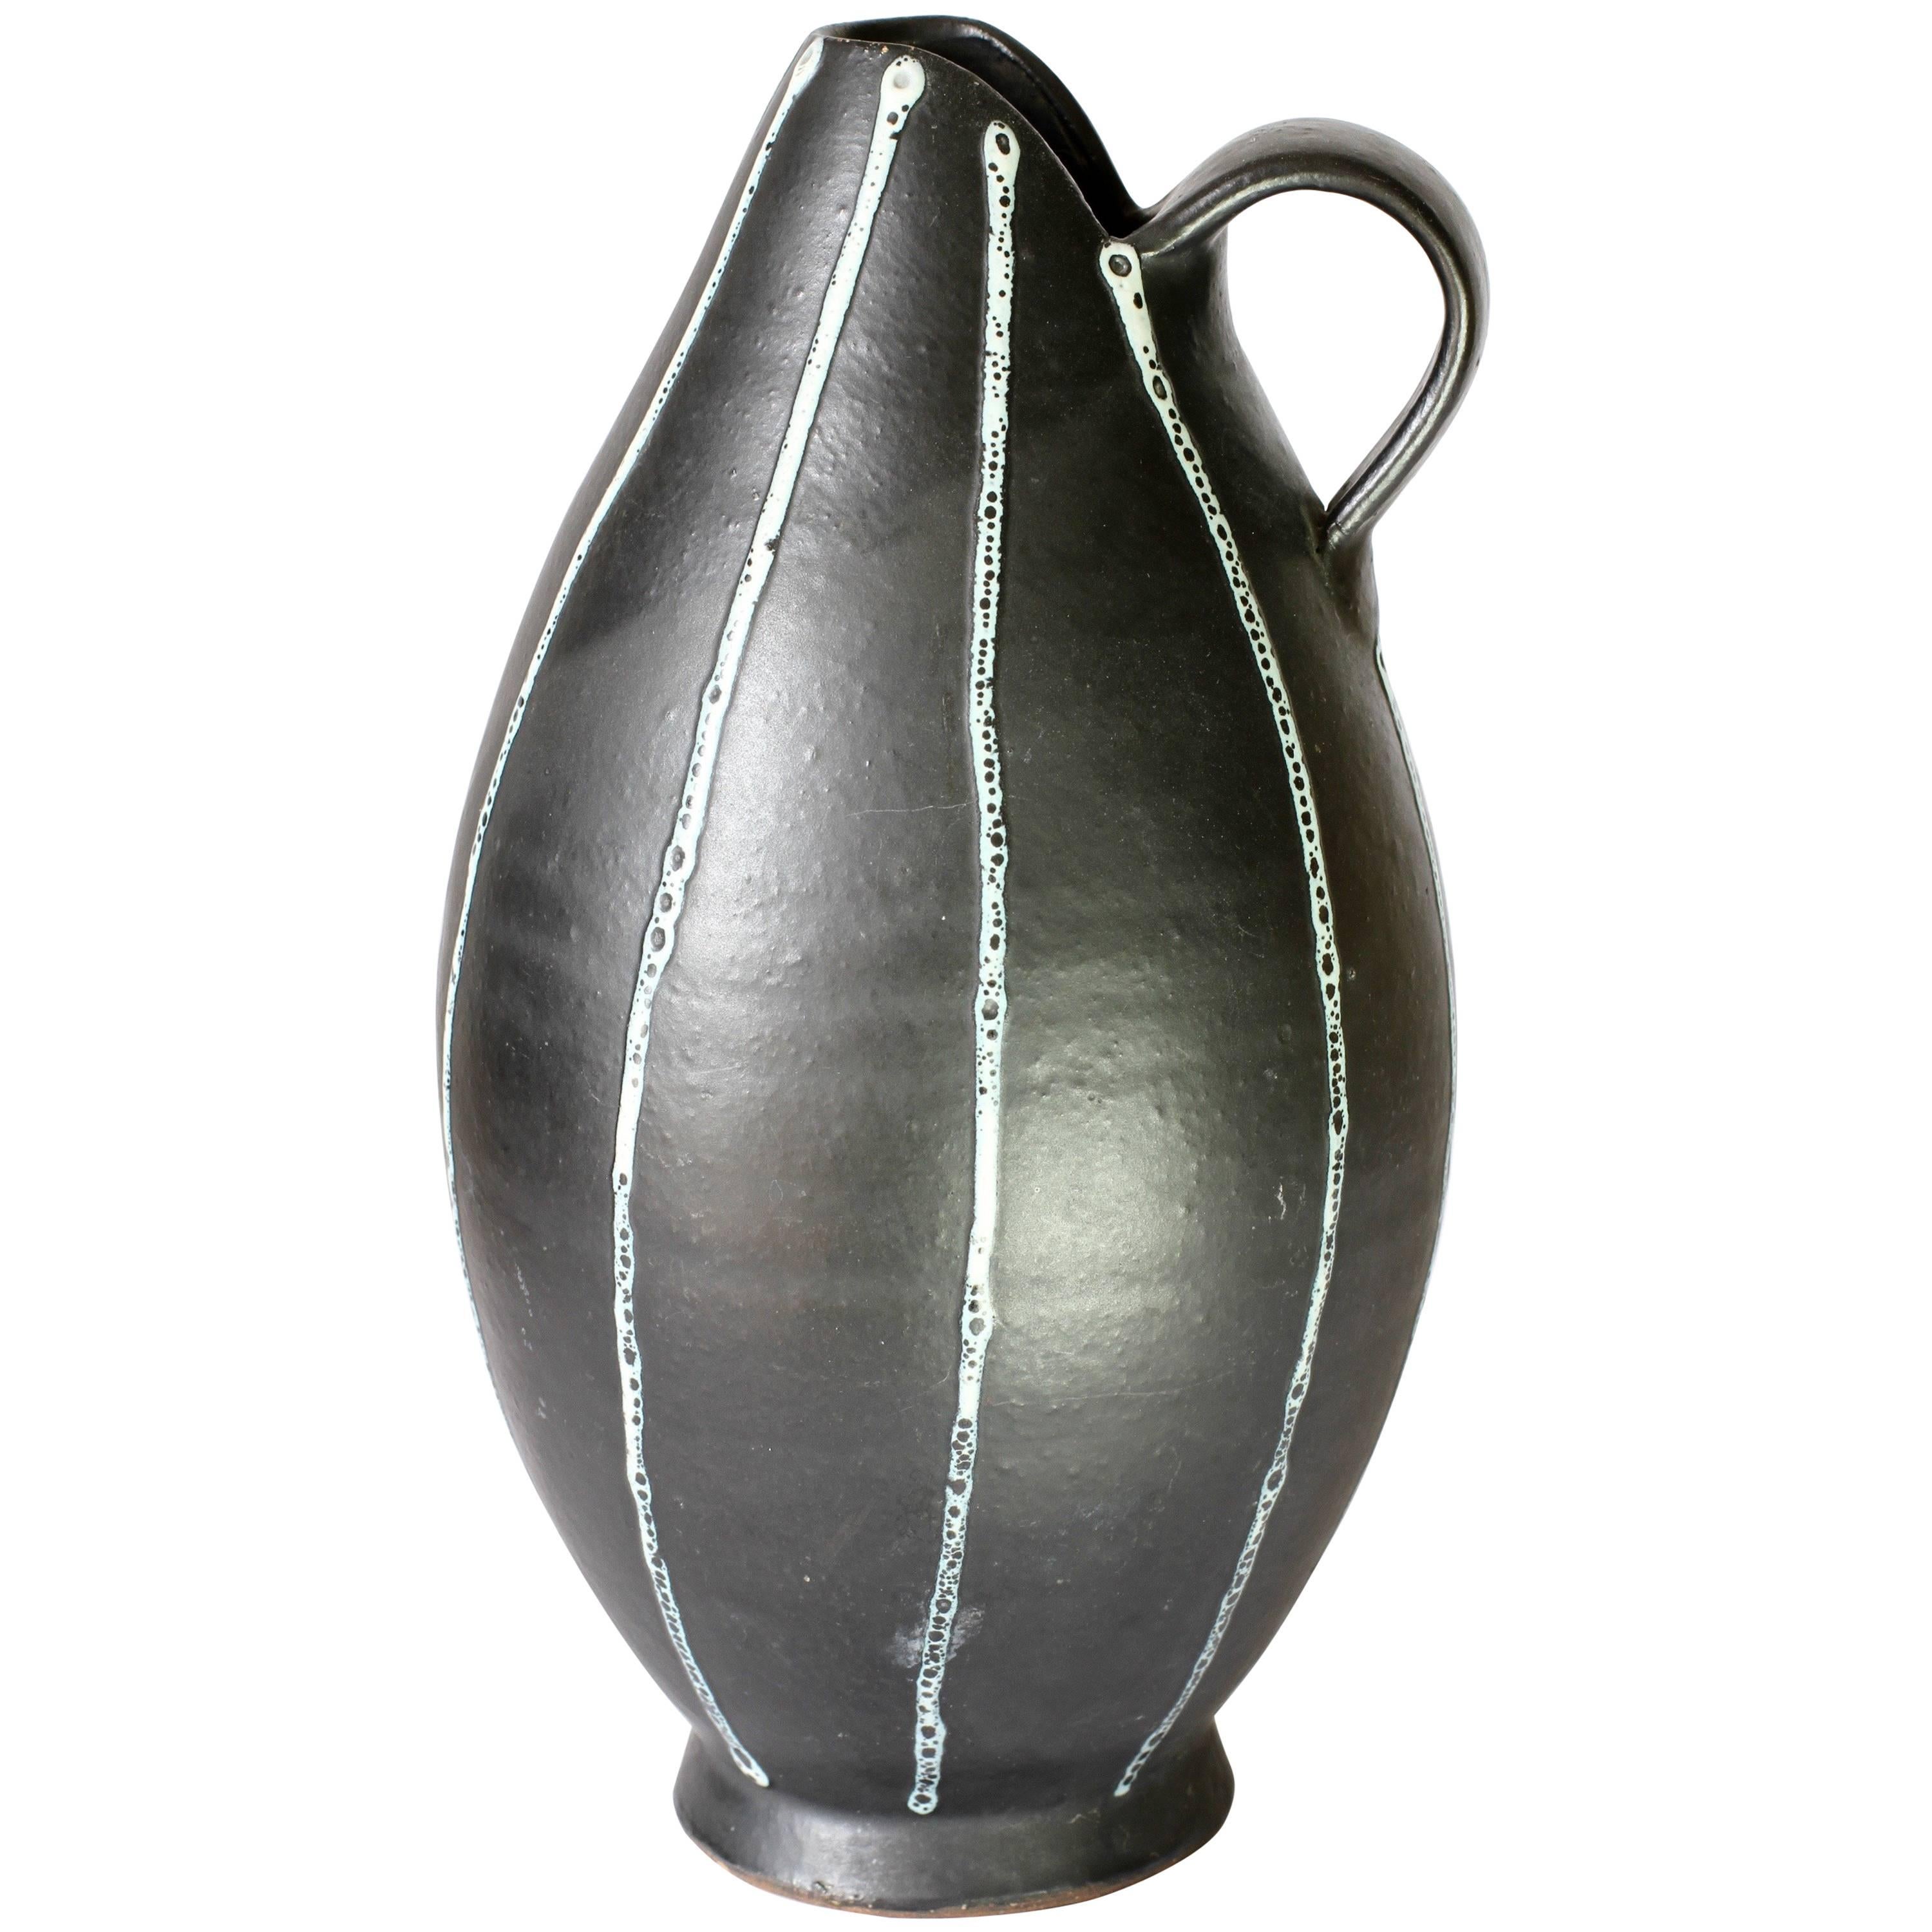 Elegante Kanne oder Krug, handgedreht von einem unbekannten Töpferstudio, um 1950-1959. Sie ist mit Sicherheit europäischen Ursprungs und höchstwahrscheinlich in Deutschland hergestellt worden, da sie sehr ähnliche Glasurtechniken aufweist wie die